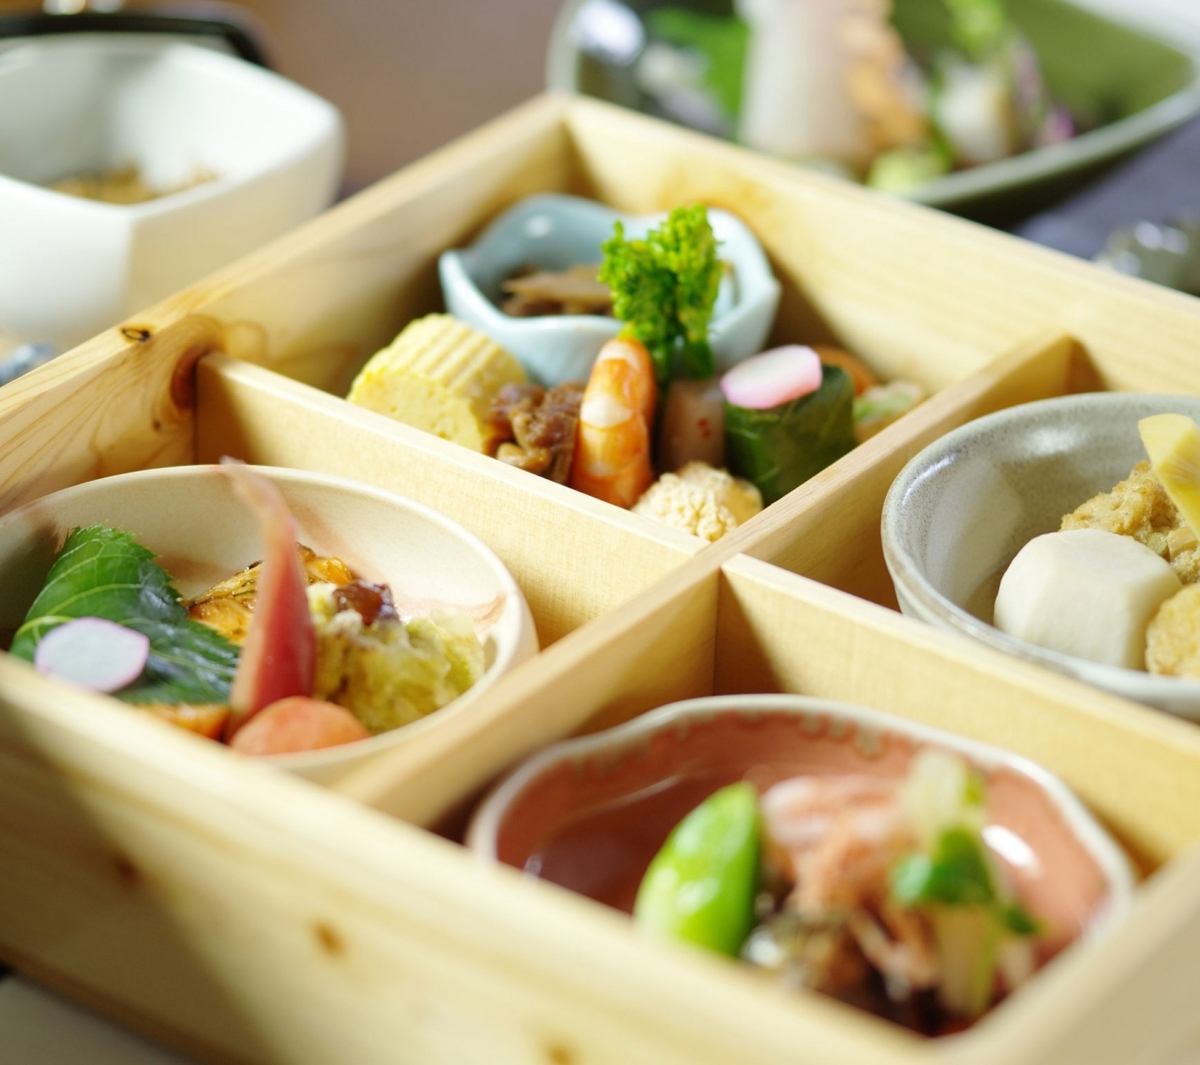 五島鯖茶漬け膳、海鮮丼、信州蕎麦と天ぷら膳など6種のランチ